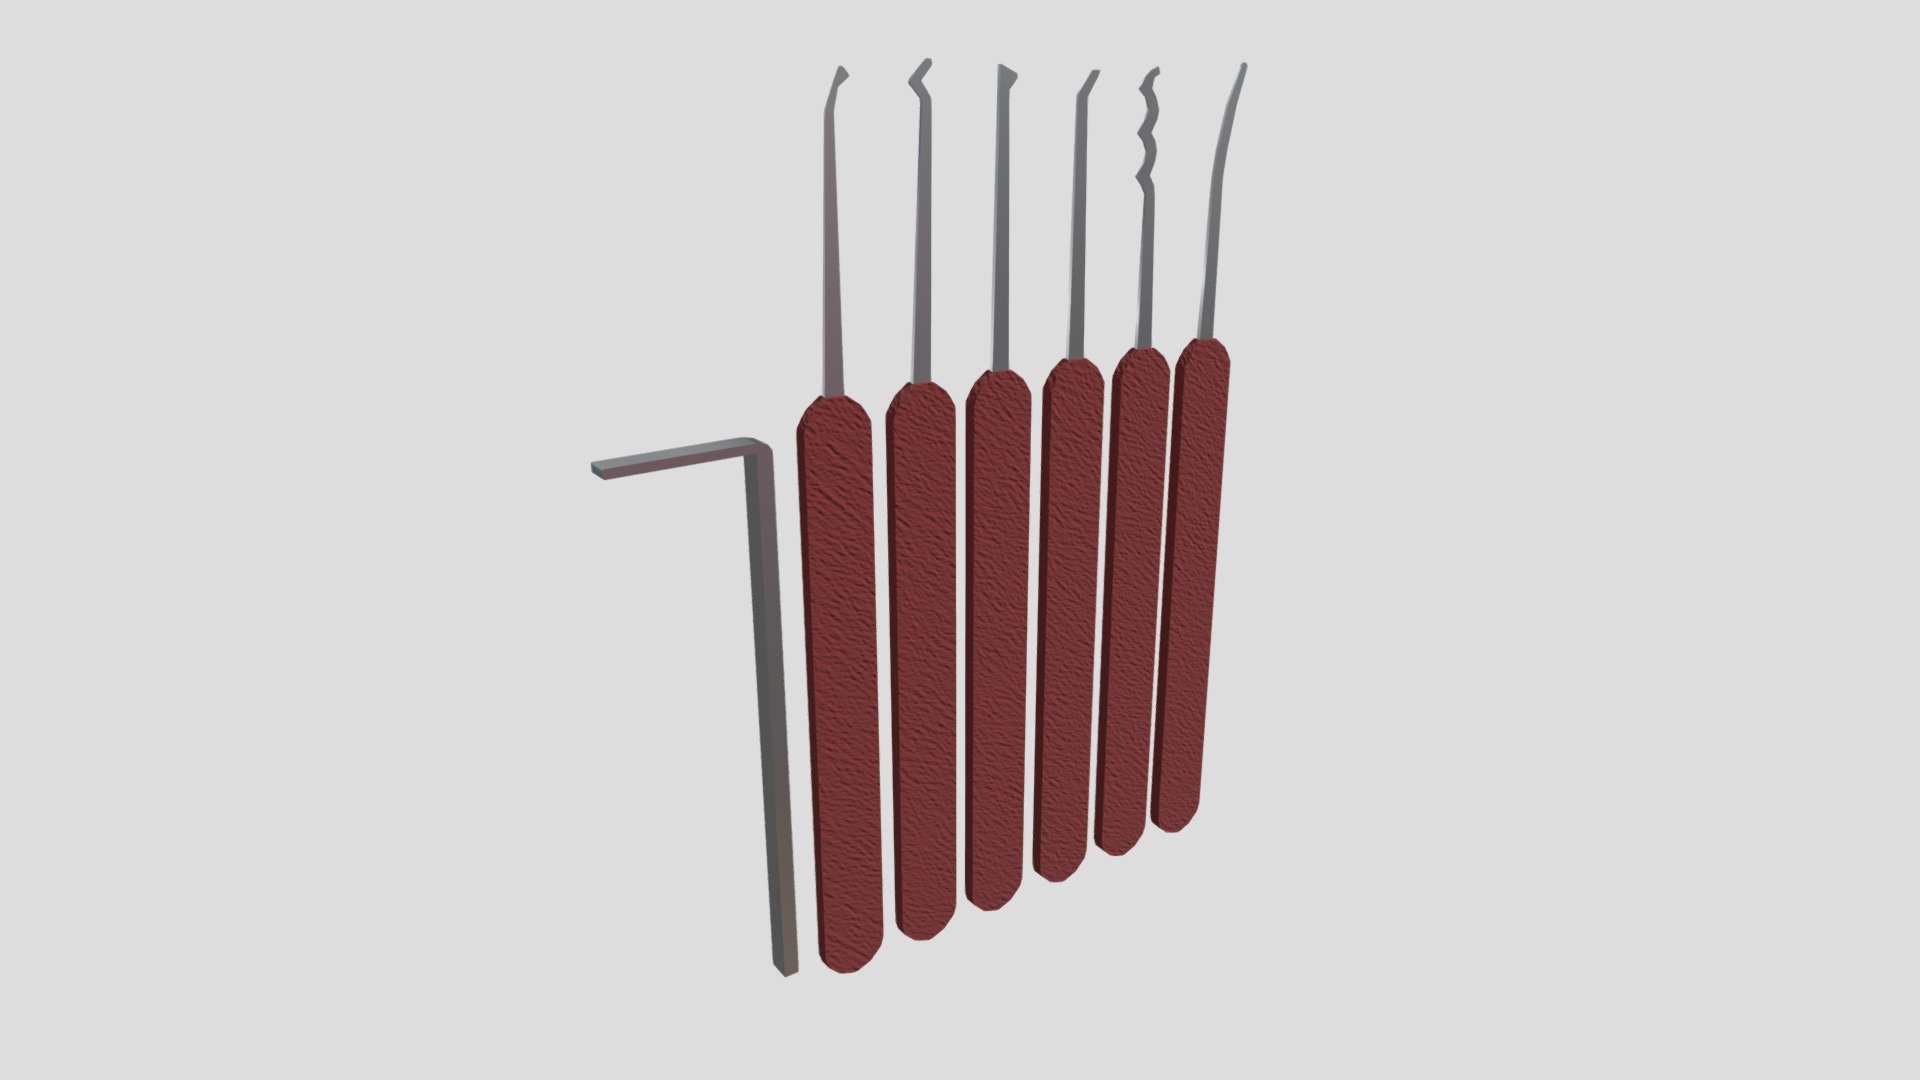 Set of tools for lockpicking - Lockpicking set - Download Free 3D model by Diccbudd 3d model